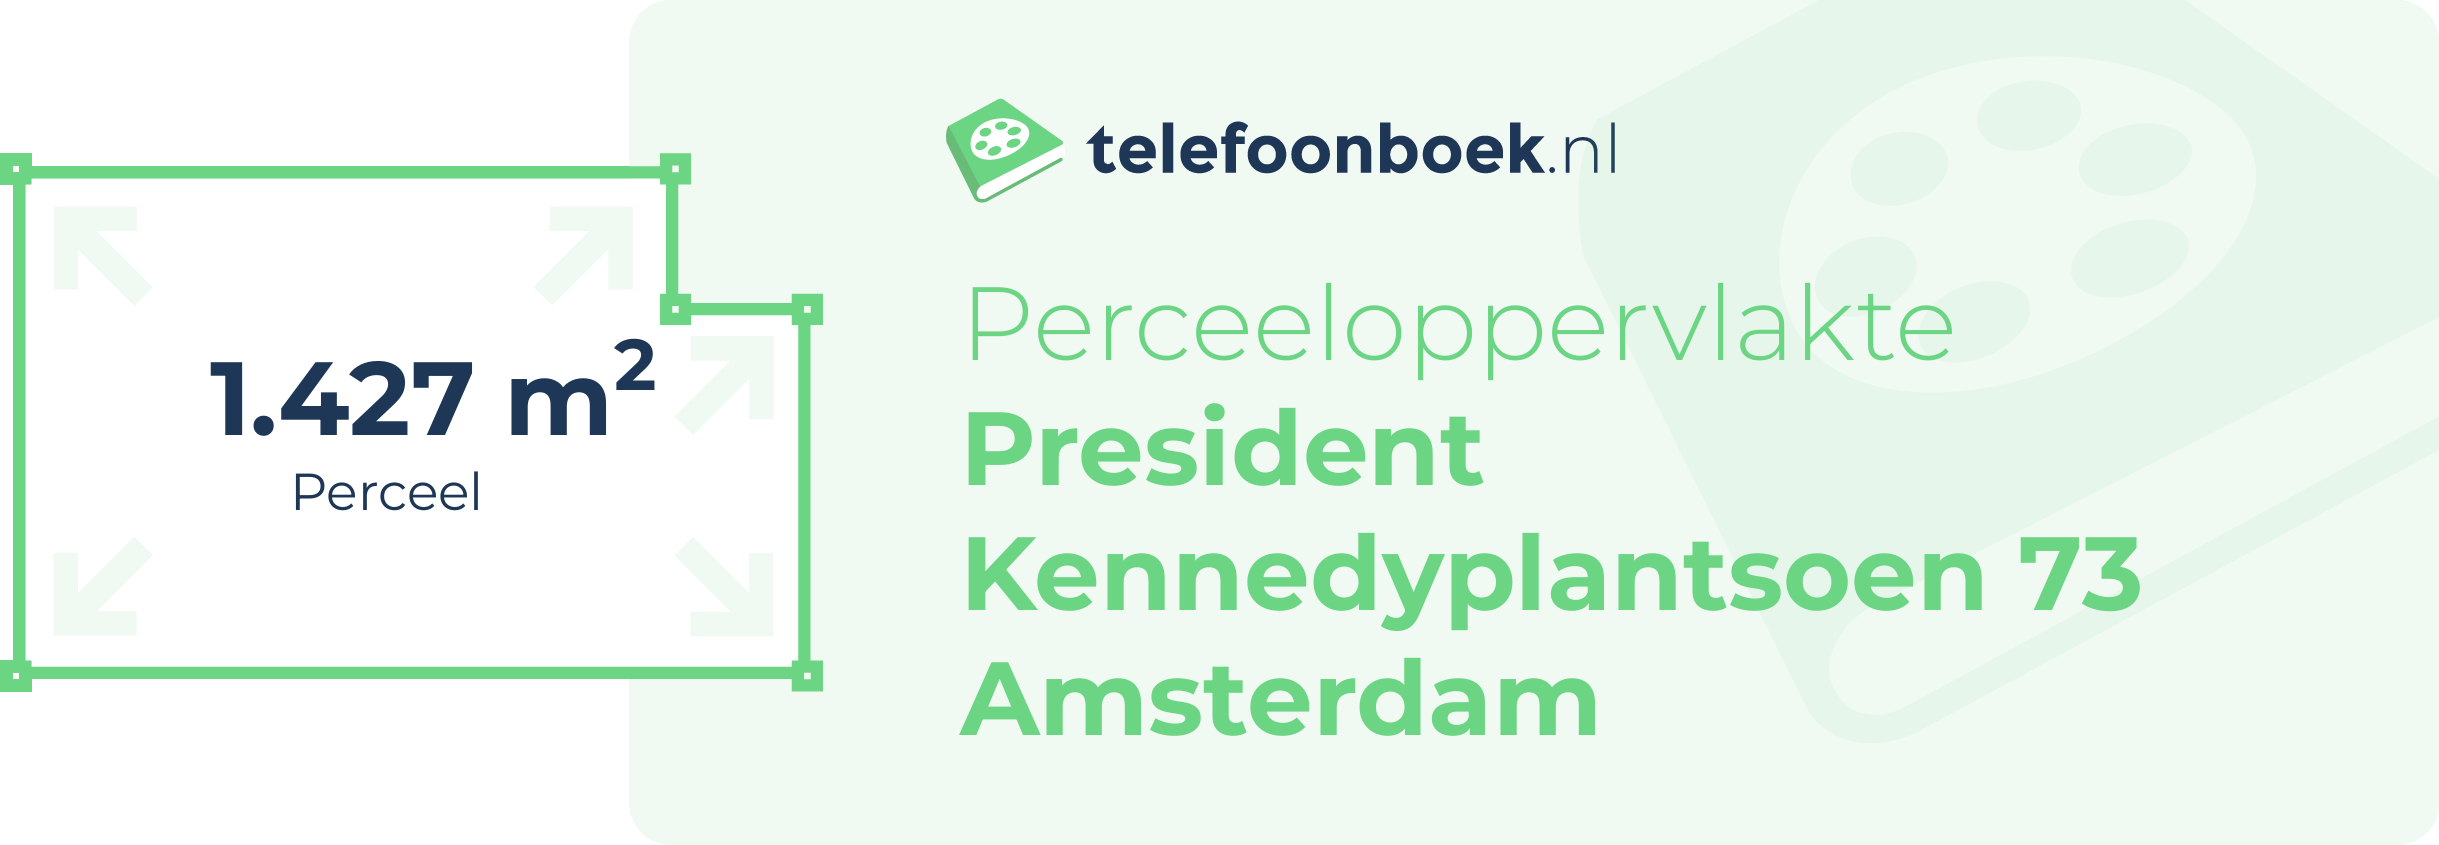 Perceeloppervlakte President Kennedyplantsoen 73 Amsterdam